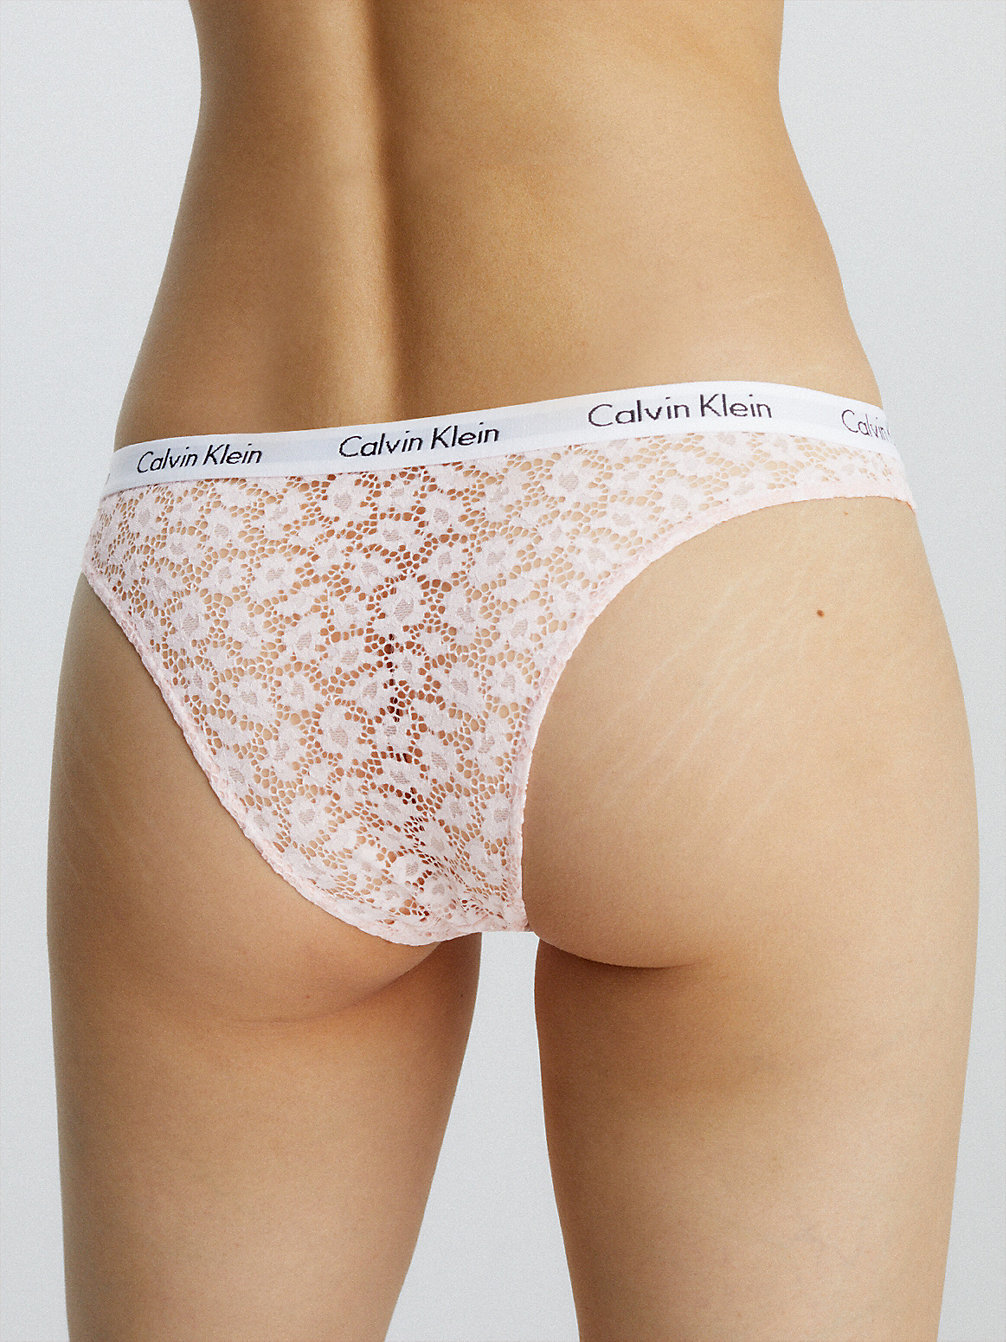 NYMPHS THIGH Brazilian Brief - Carousel undefined women Calvin Klein